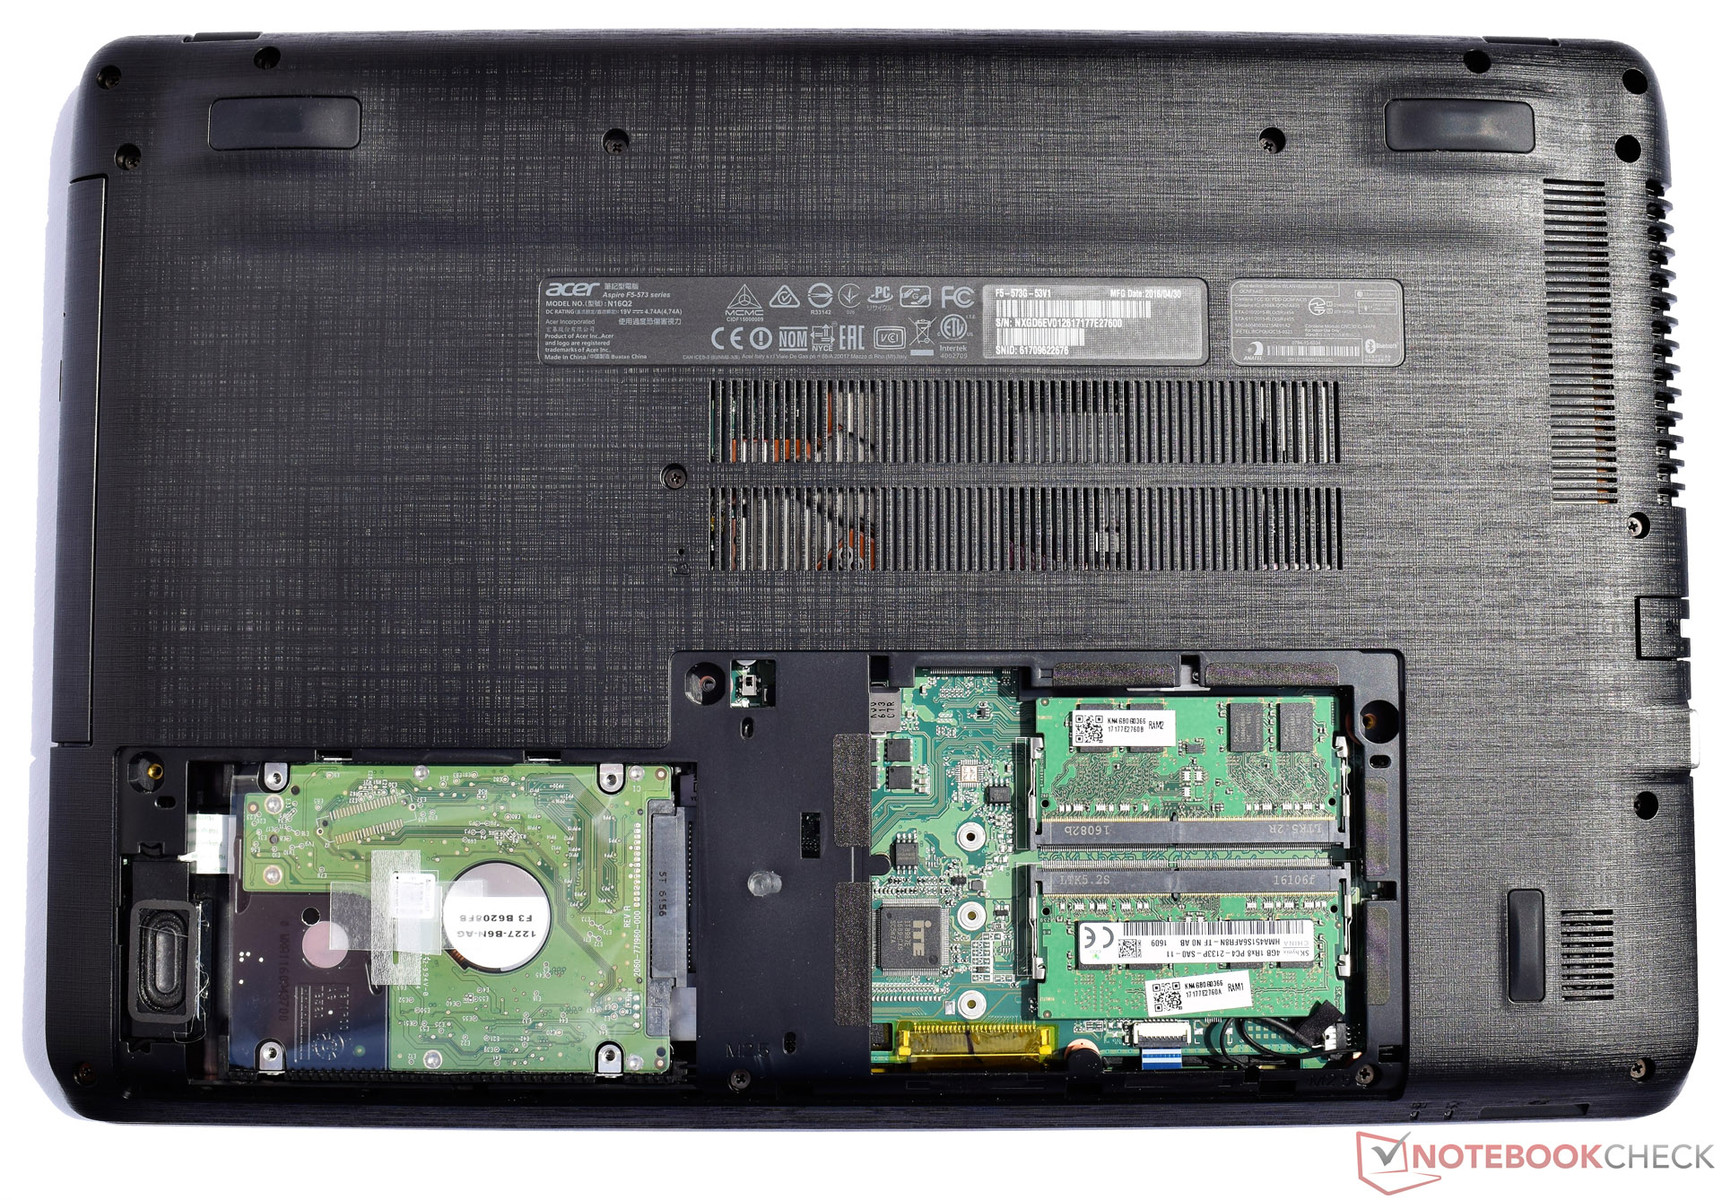 Acer Aspire E5-575G (i5-7200U, GTX 950M) Review - NotebookCheck.net